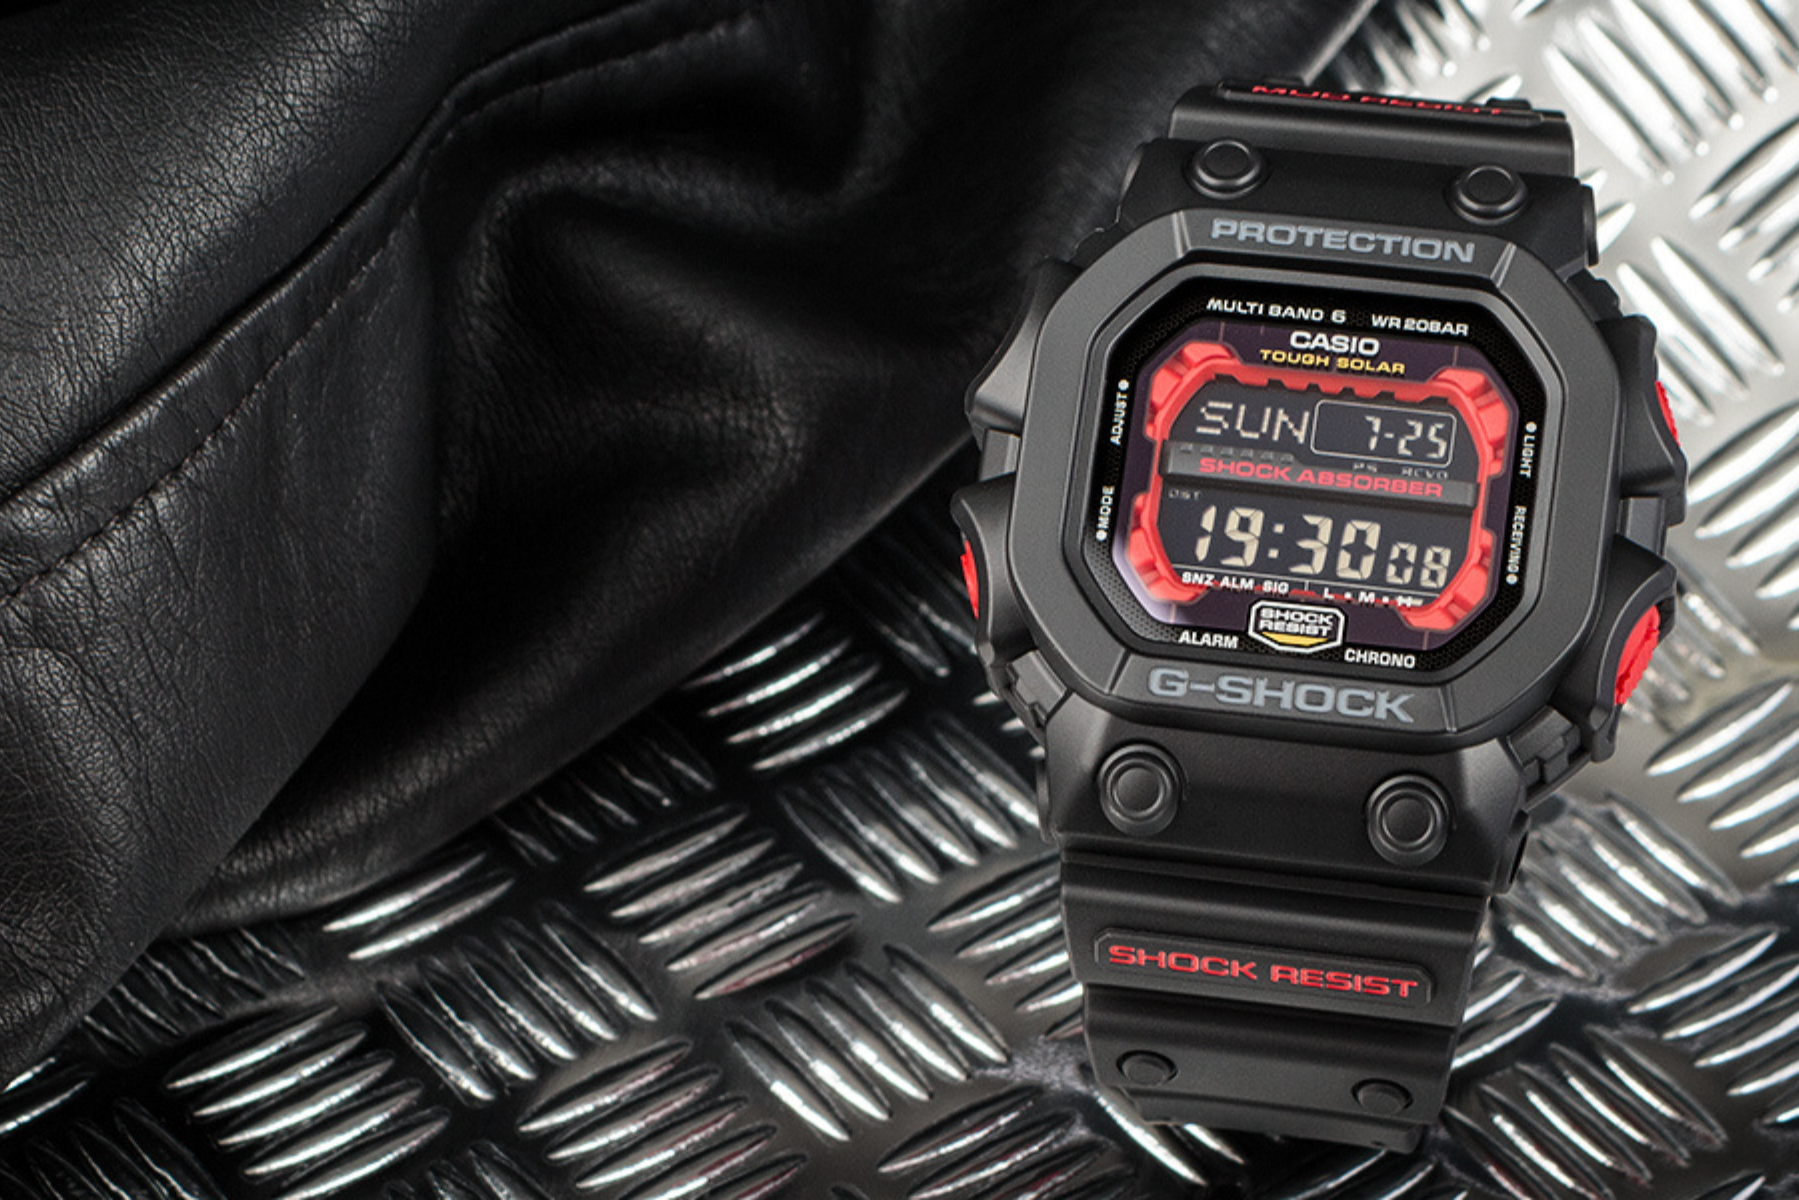 Pánske náramkové hodinky Casio G-SHOCK GXW-56-1AER kvalita